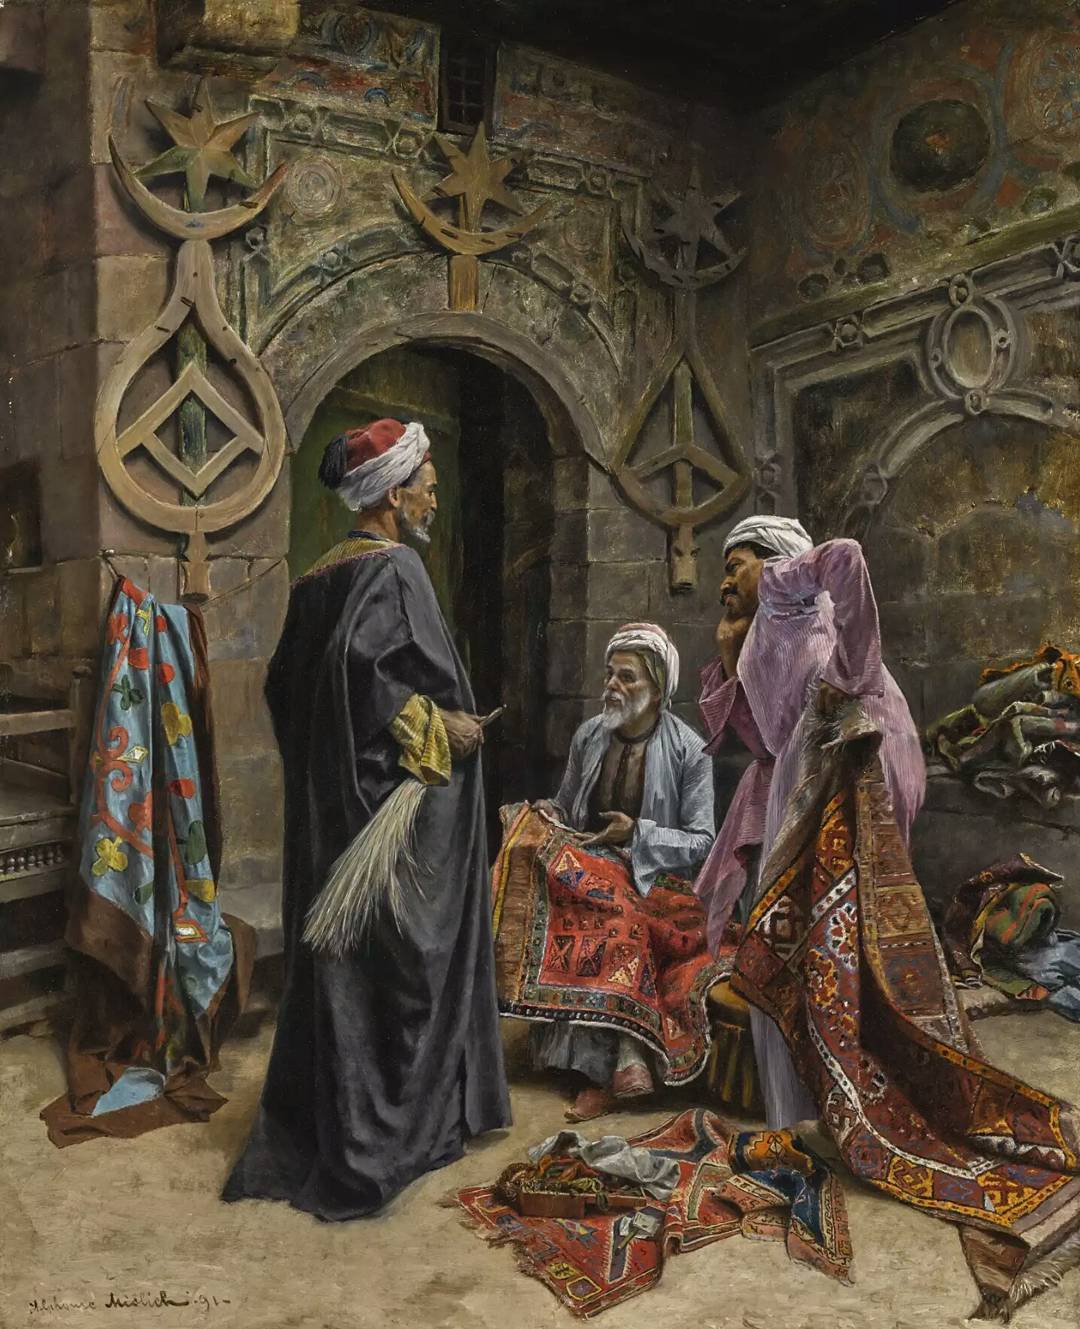 Halı pazarı, Kahire, Osmanlı dönemi Mısır, 1800'ler.
Carpet market, Cairo, Ottom...